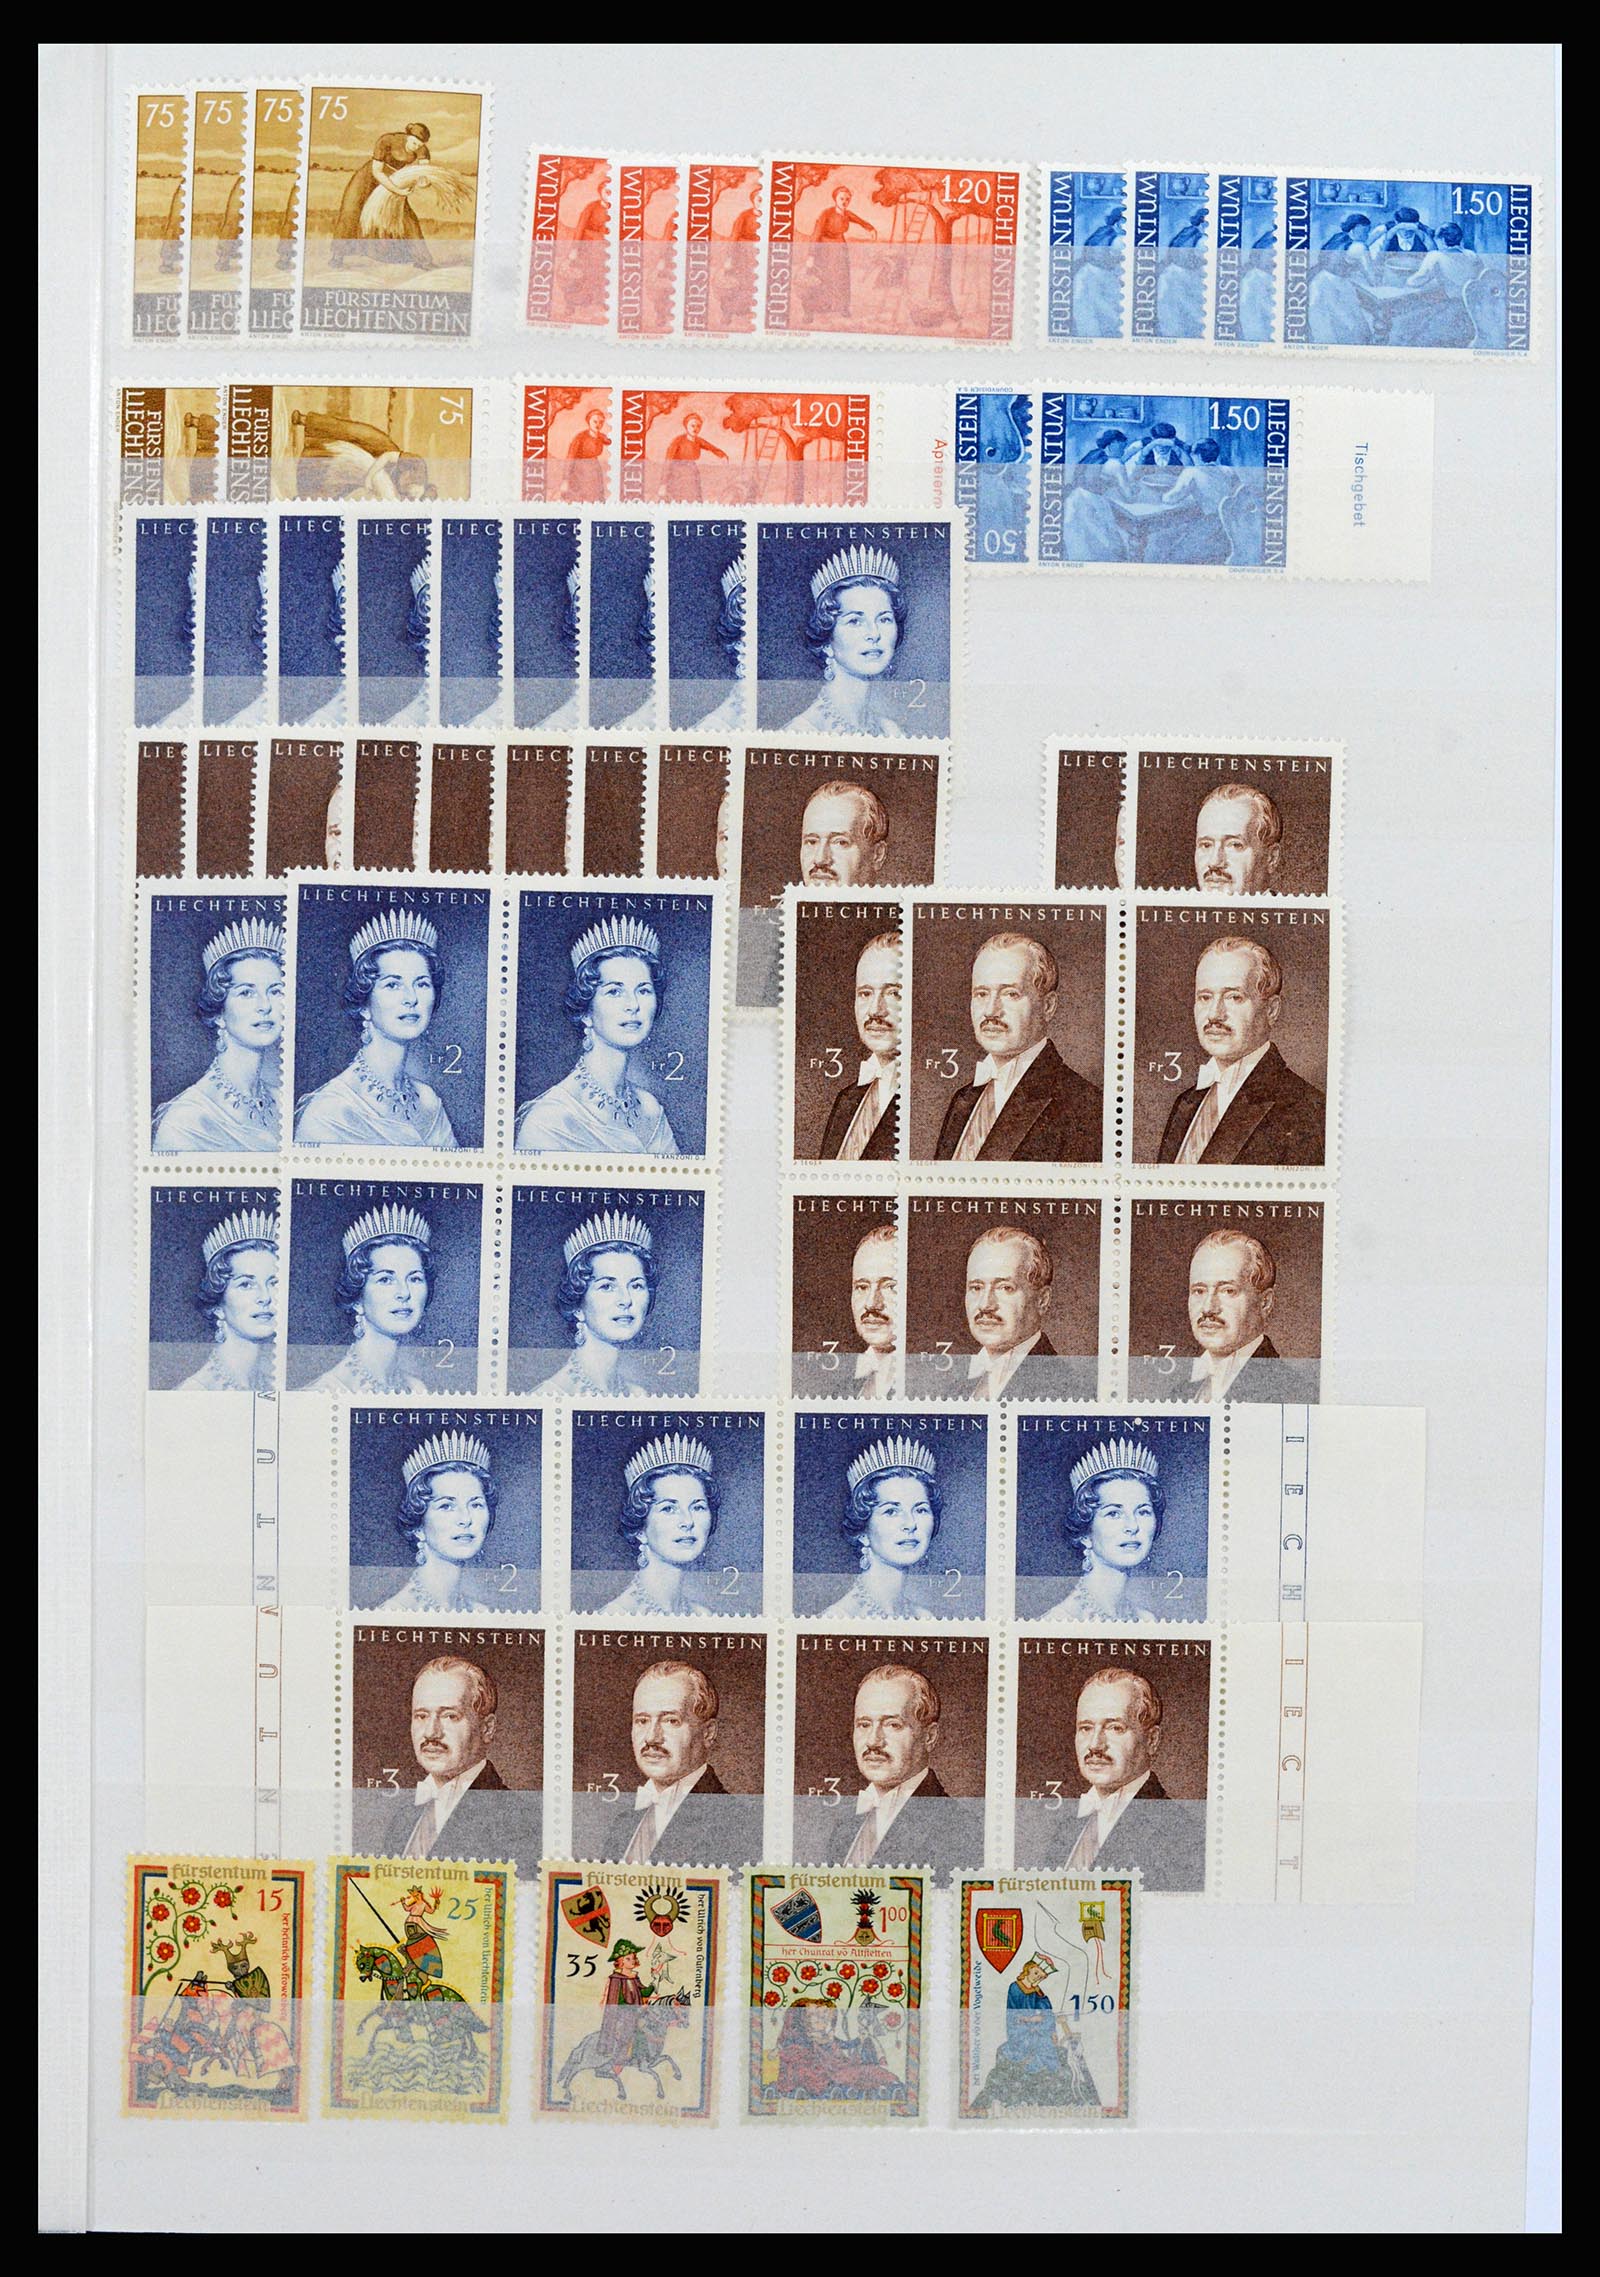 37261 003 - Stamp collection 37261 Liechtenstein 1961-1995.